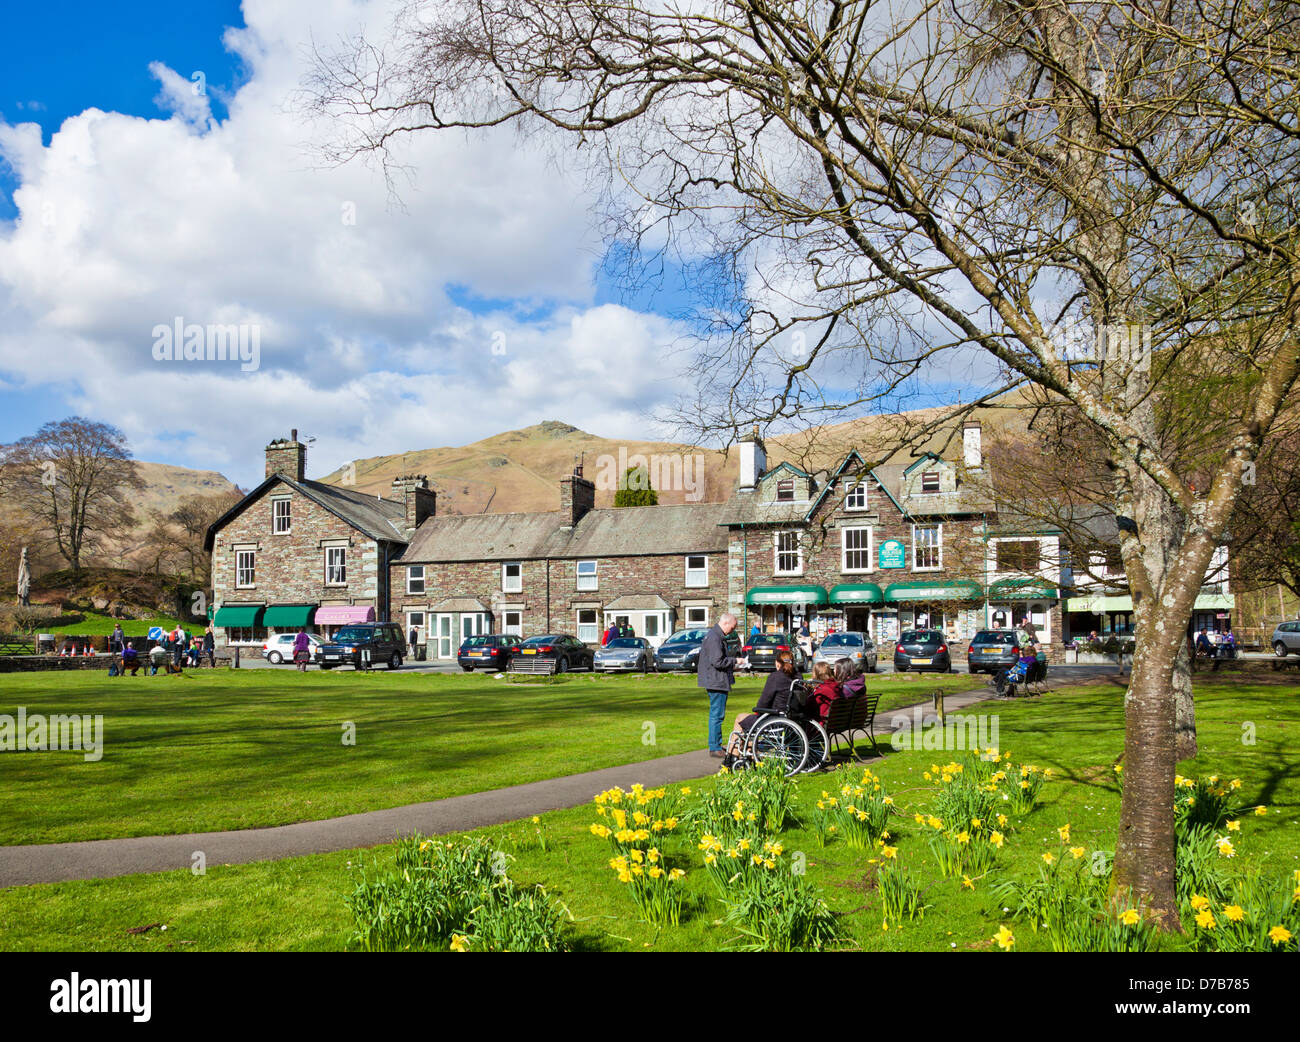 La gente seduta sulle panchine intorno al villaggio verde godendo il sole primaverile in Grasmere Cumbria Inghilterra UK GB EU Europe Foto Stock